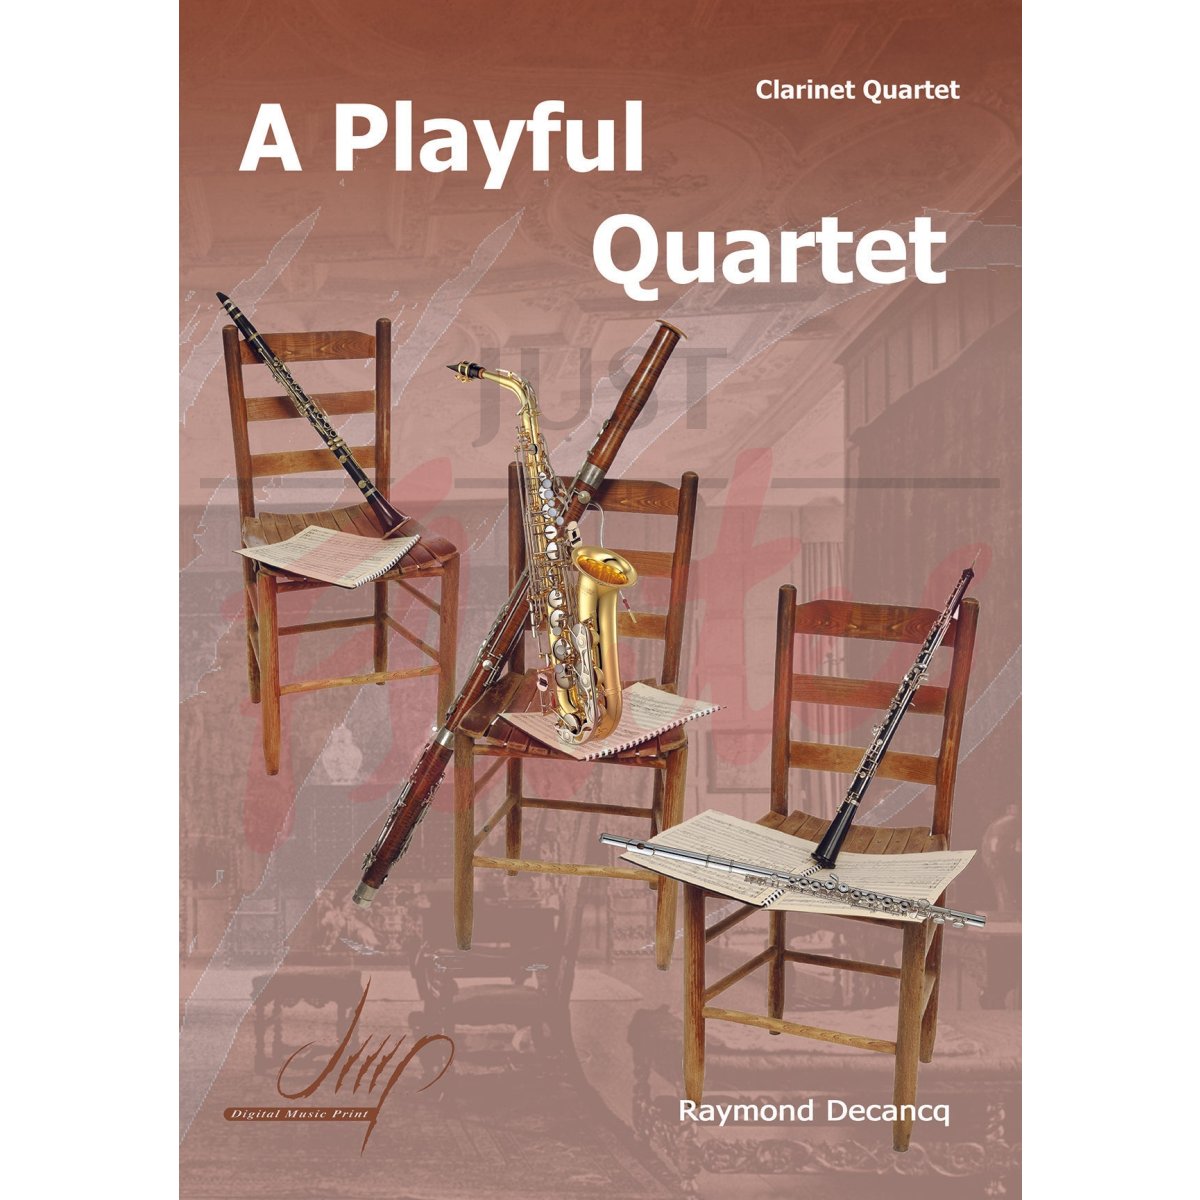 A Playful Quartet for Clarinet Quartet